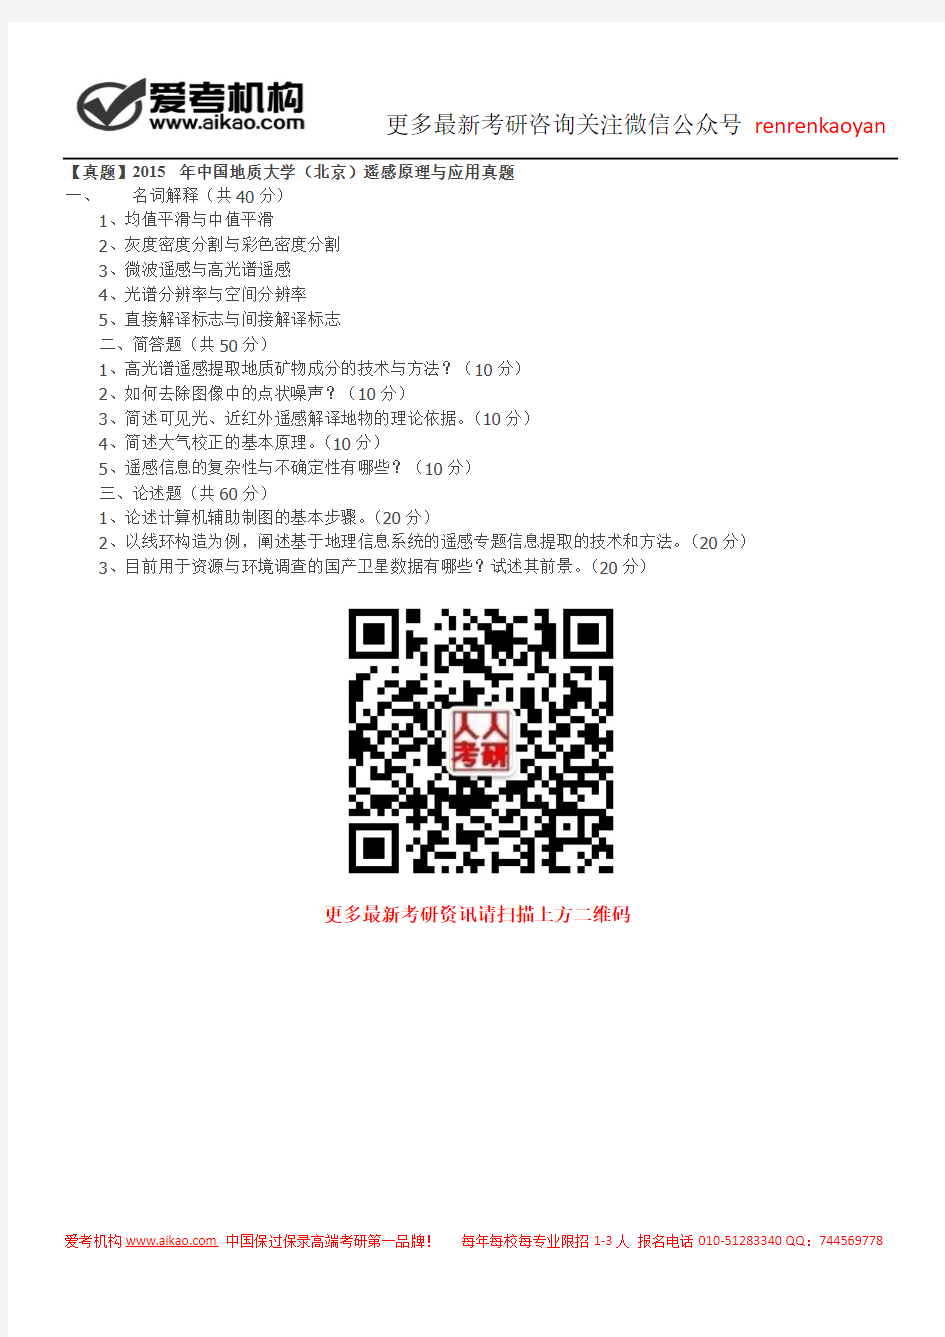 【真题】2015年中国地质大学(北京)遥感原理与应用真题